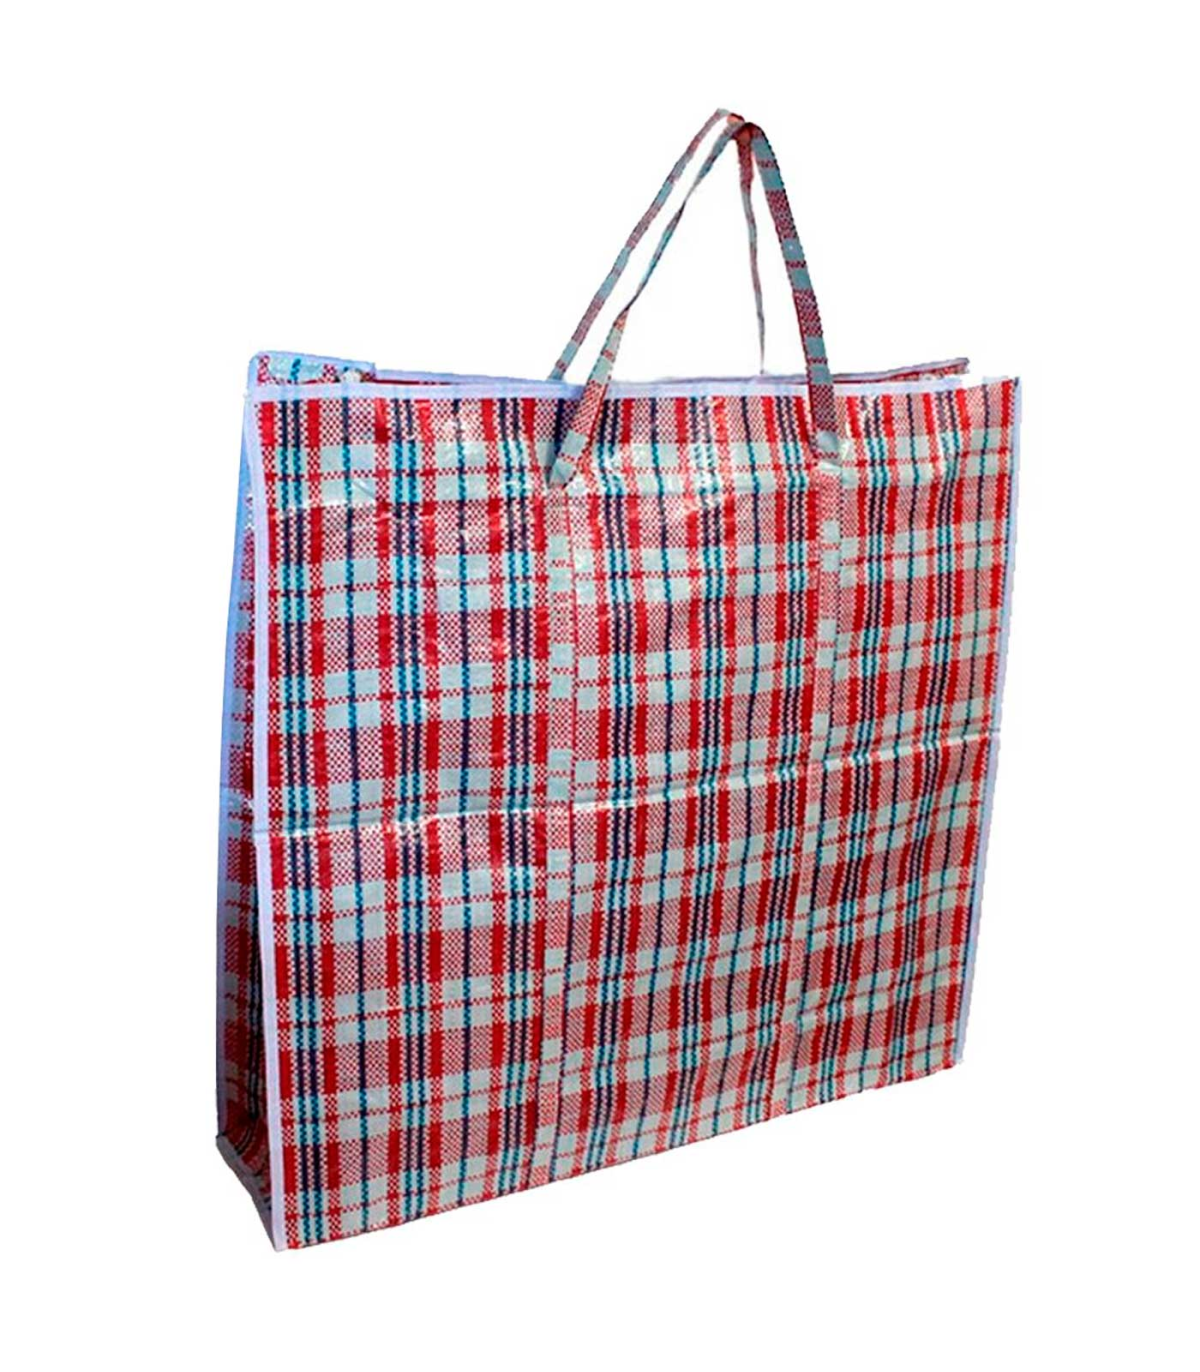 Tradineur - Bolsa plástica de rafia, incluye cremallera y asas,  reutilizable, mudanzas, almacenamiento de ropa, juguetes, mantas